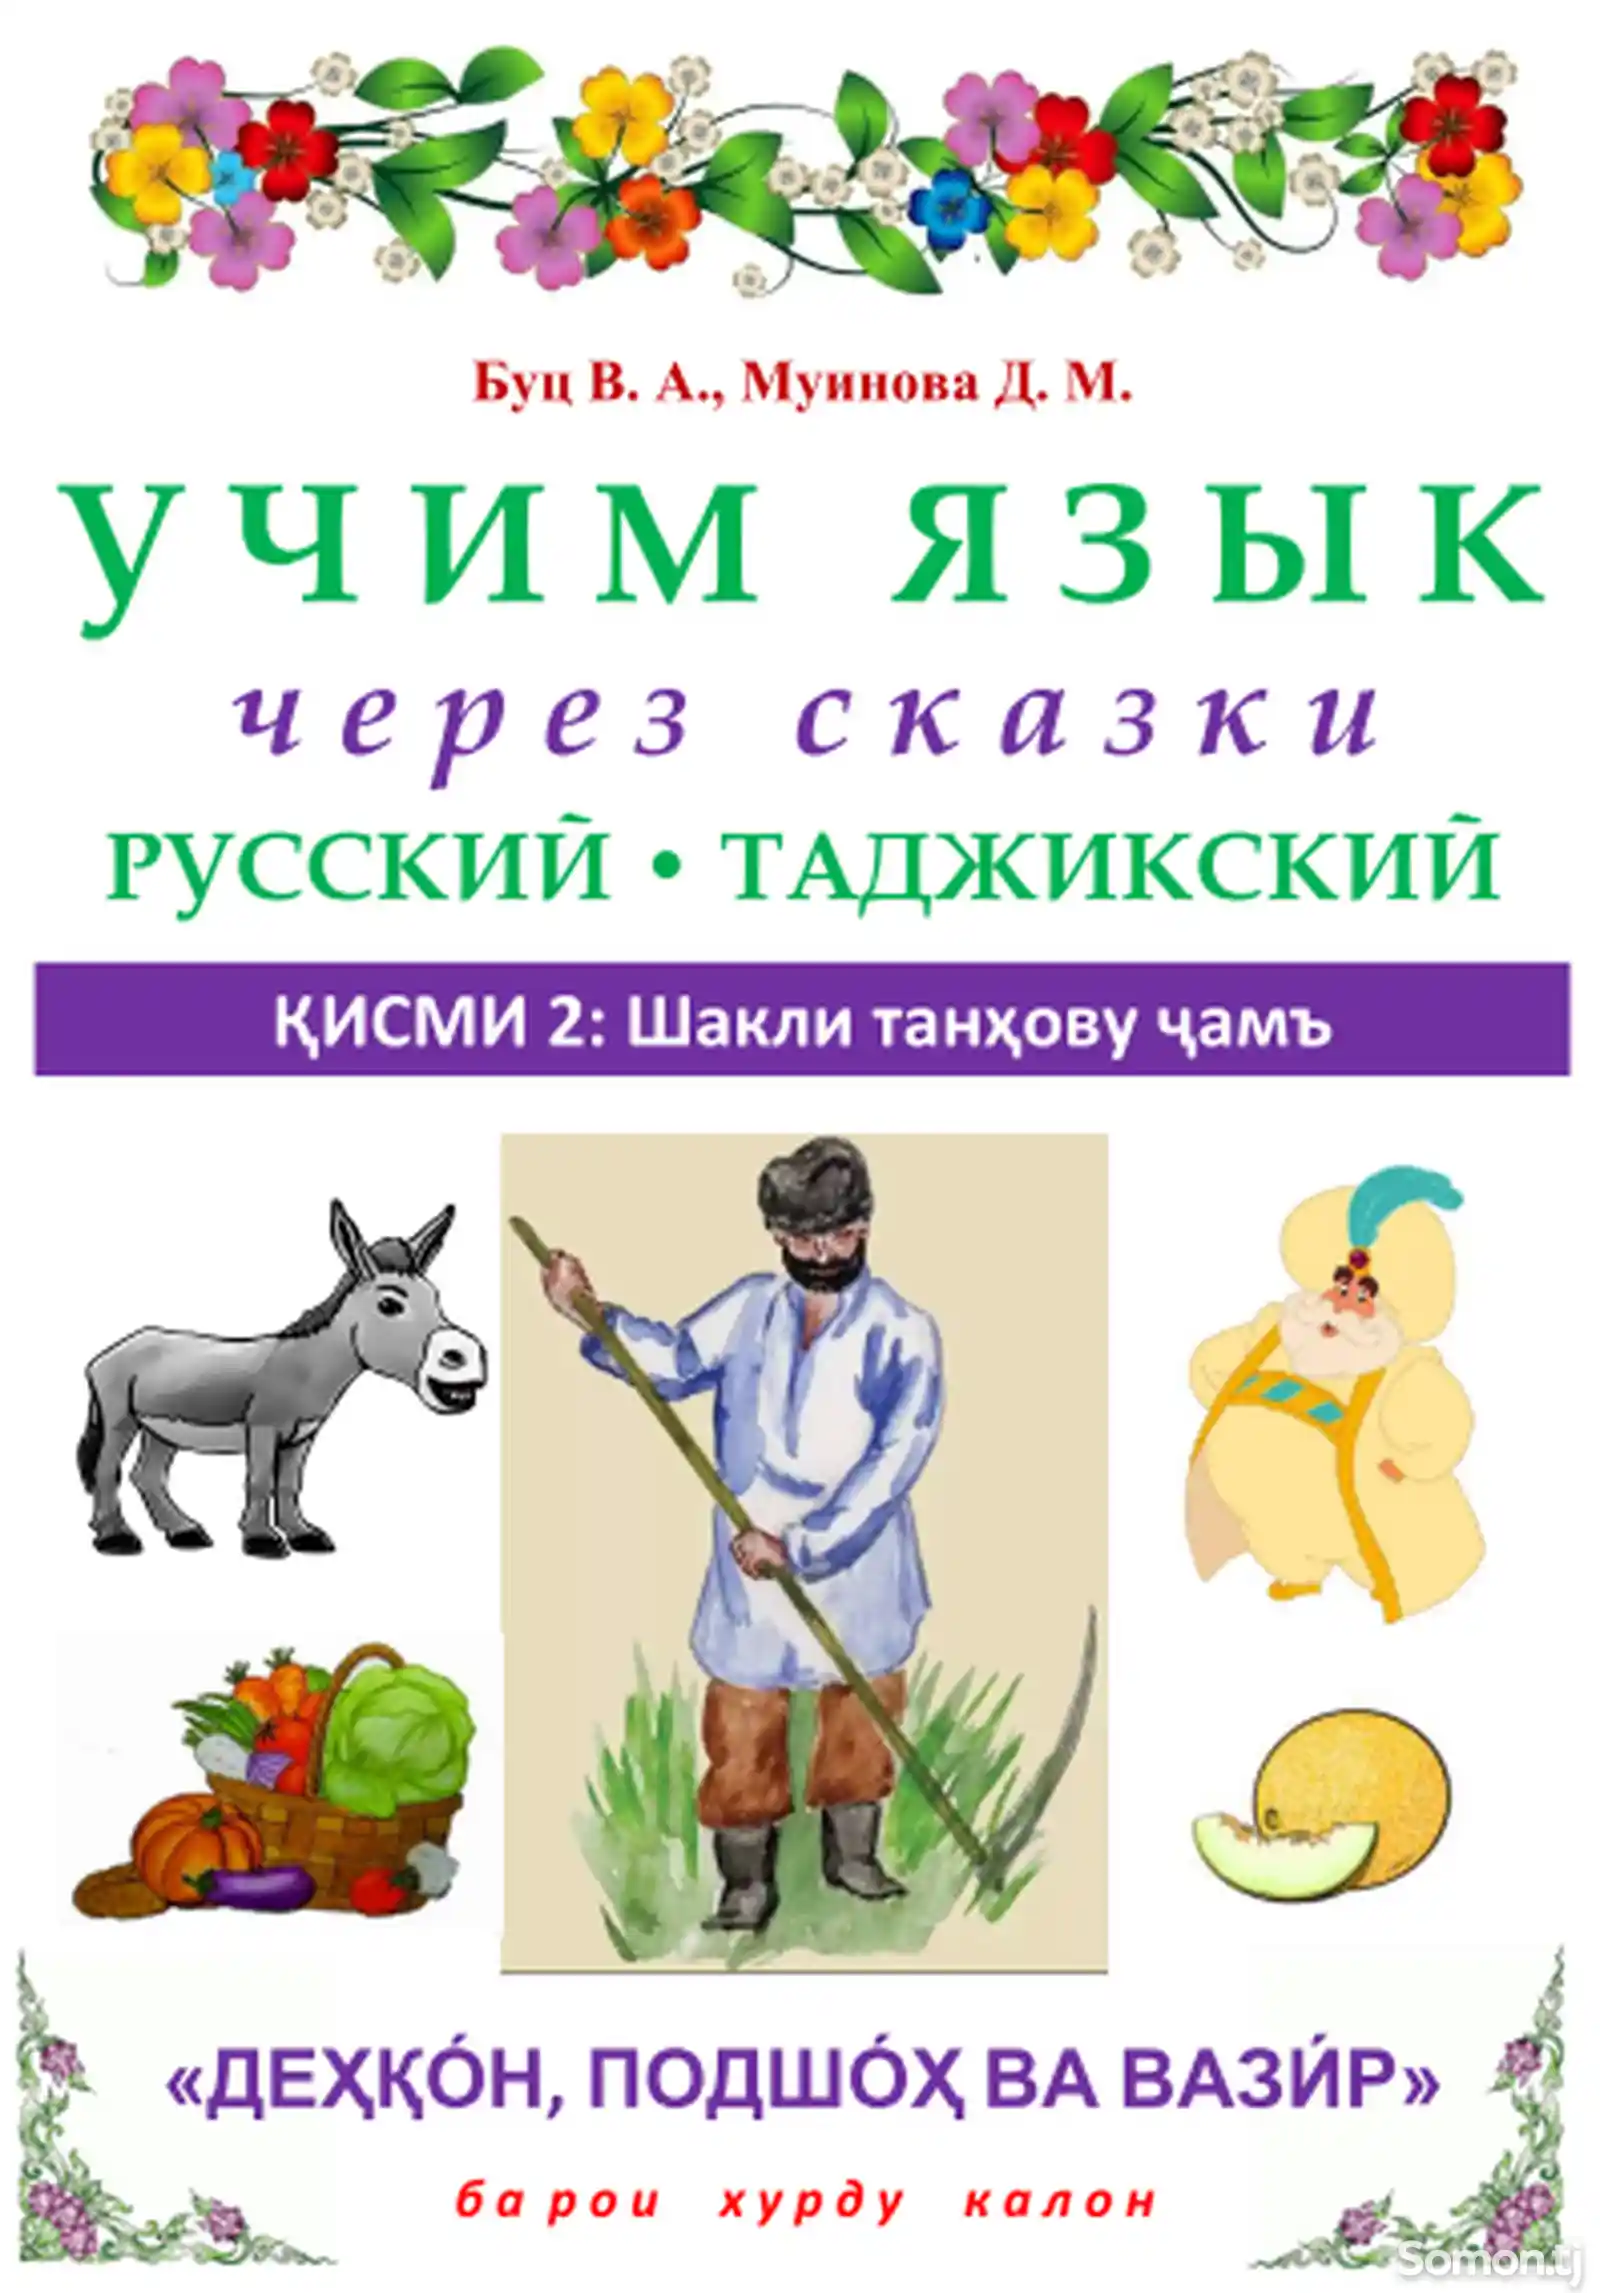 Онлайн курси омӯзиши забони русӣ-2